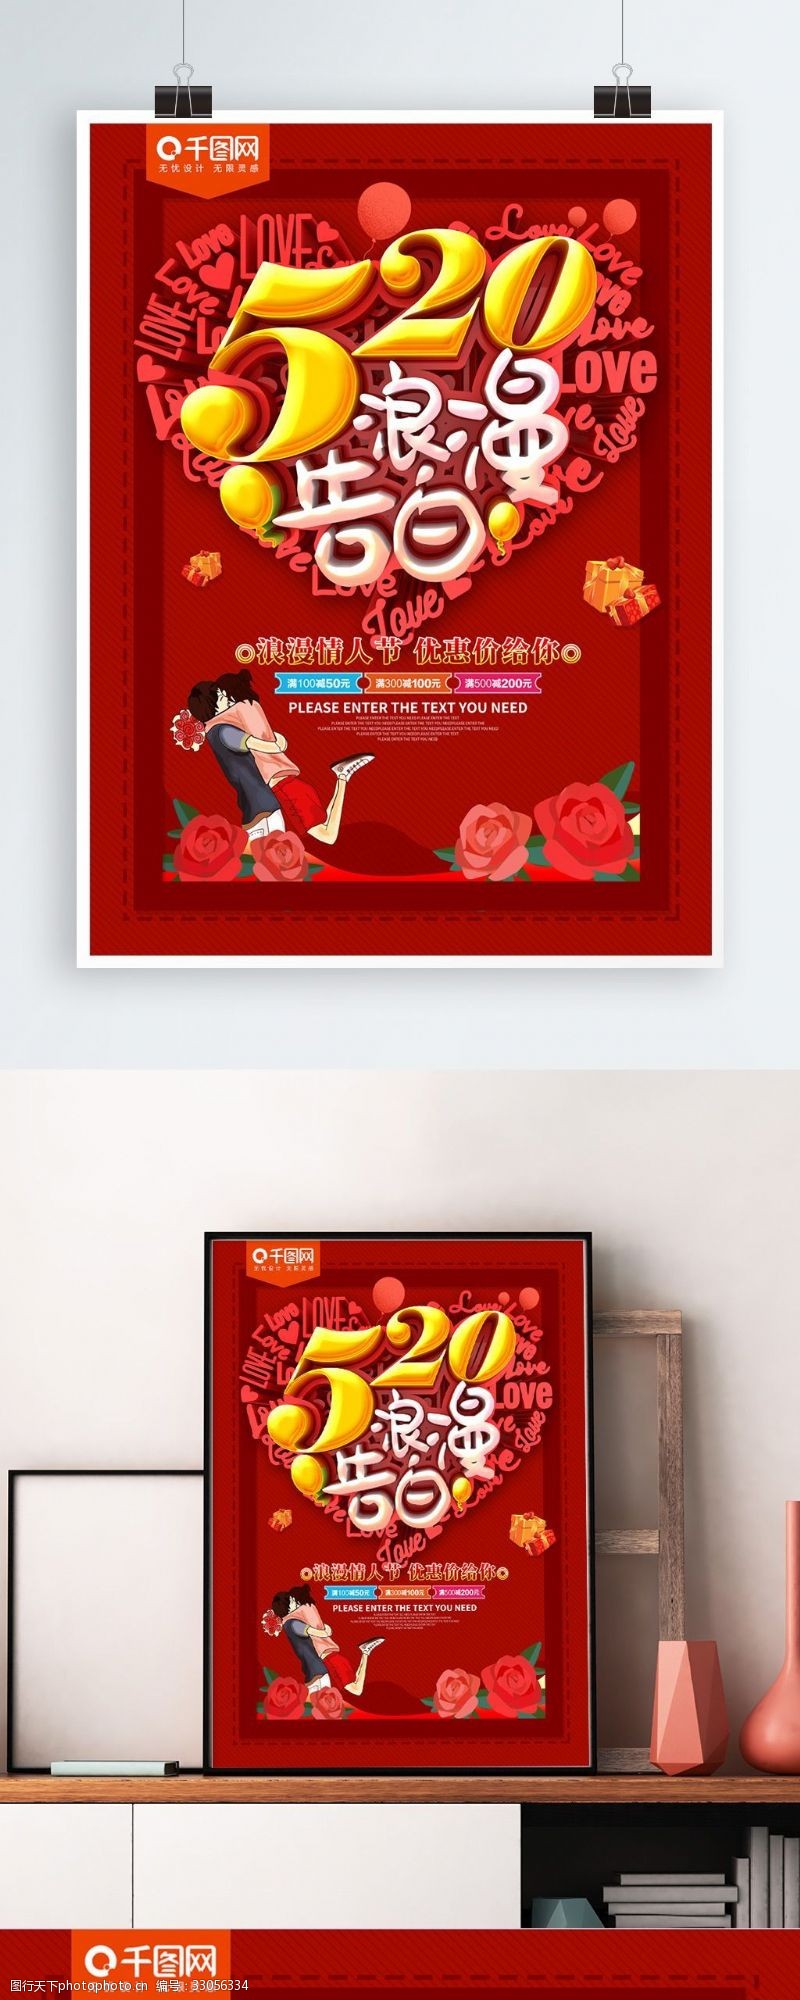 520浪漫告白红色情人节海报